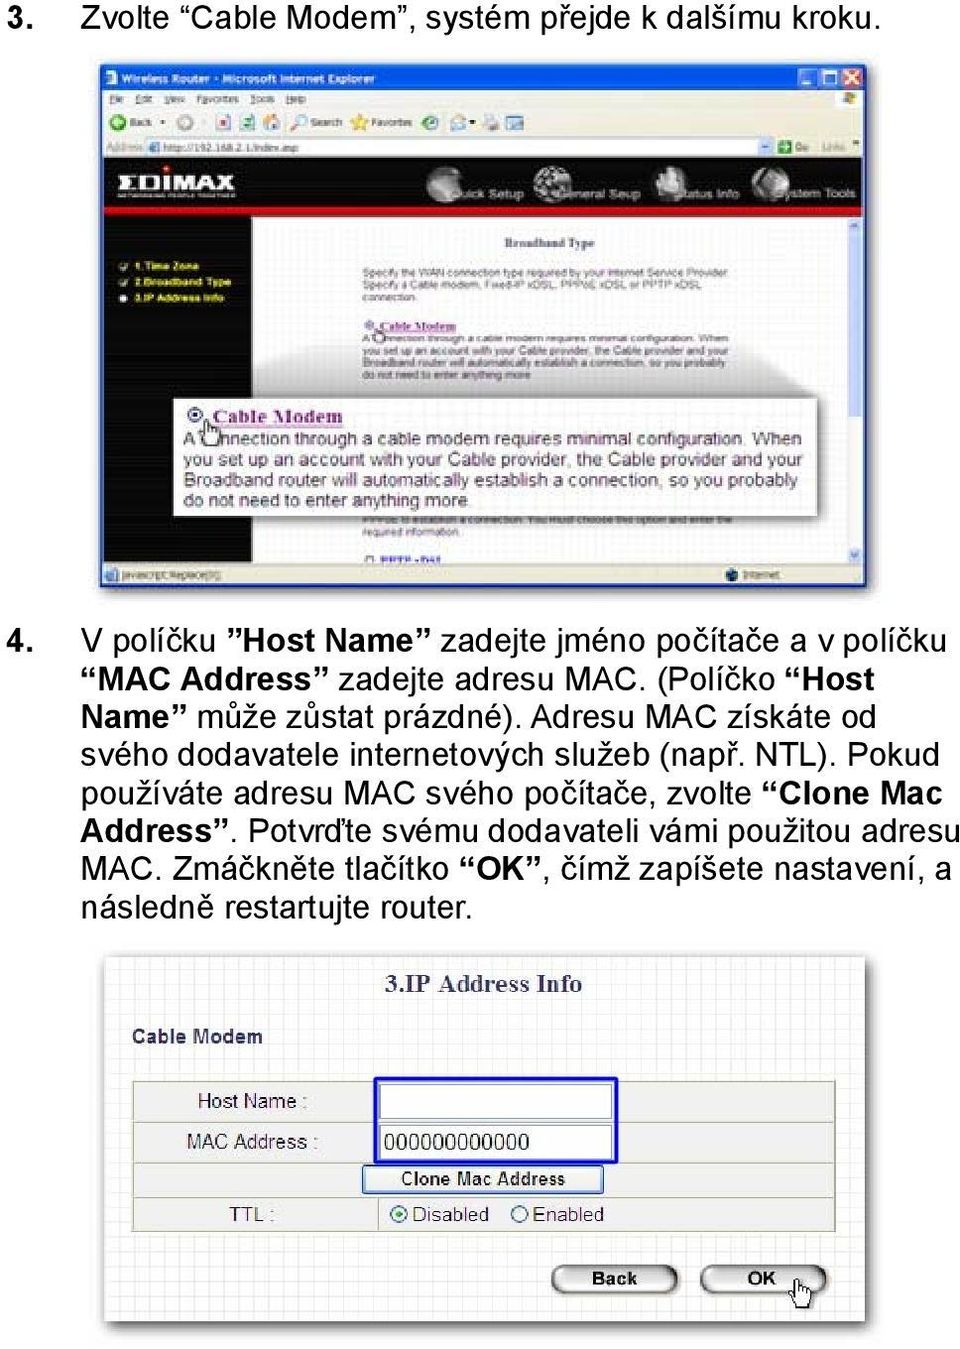 (Políčko Host Name může zůstat prázdné). Adresu MAC získáte od svého dodavatele internetových služeb (např. NTL).